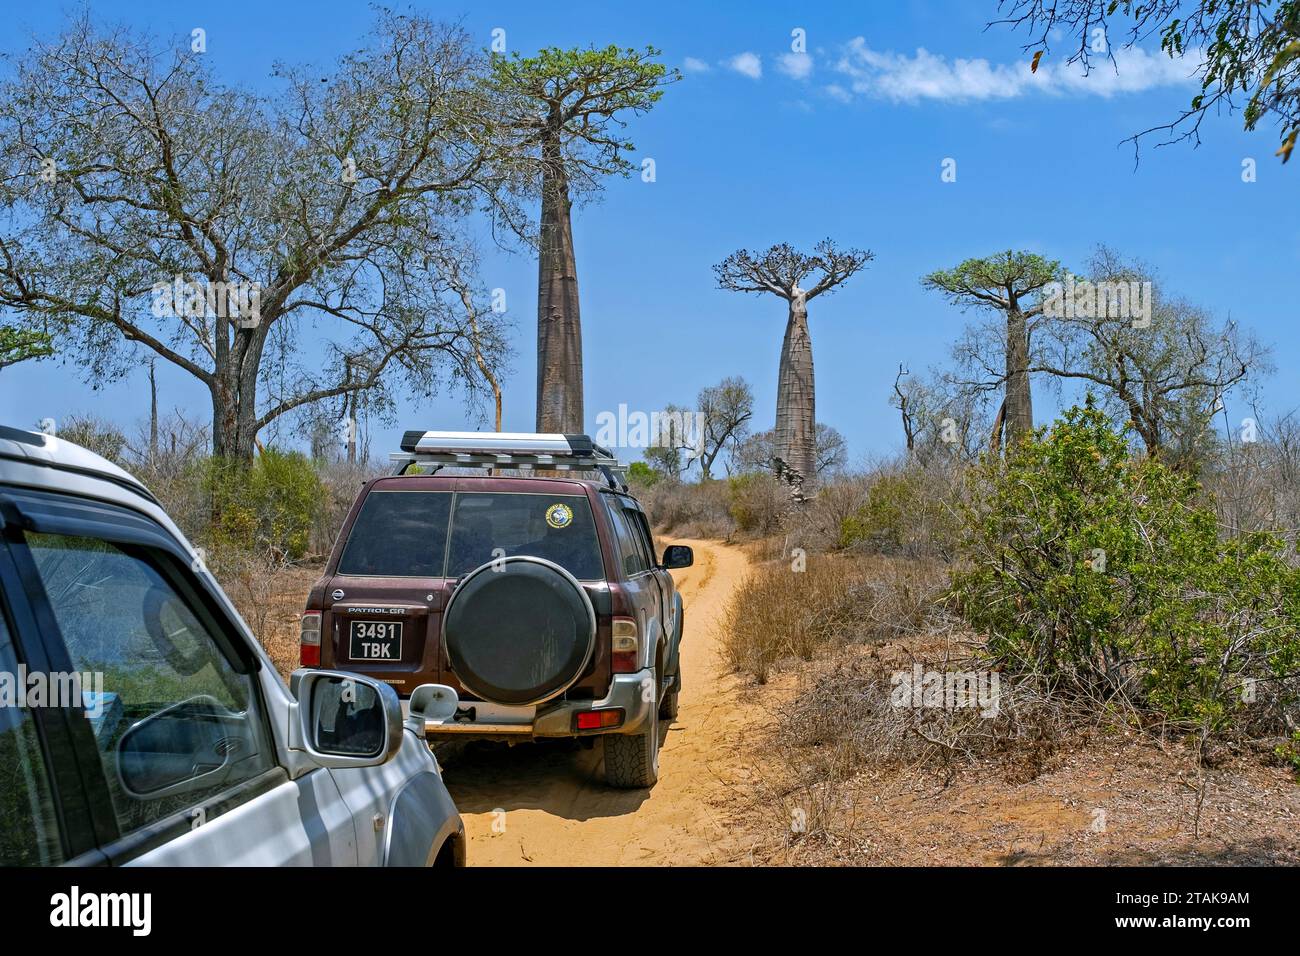 Veicoli fuoristrada a quattro ruote motrici che percorrono strade sterrate e attraversano alberi di baobab nel distretto di Morondava, regione di Menabe, Madagascar, Africa Foto Stock